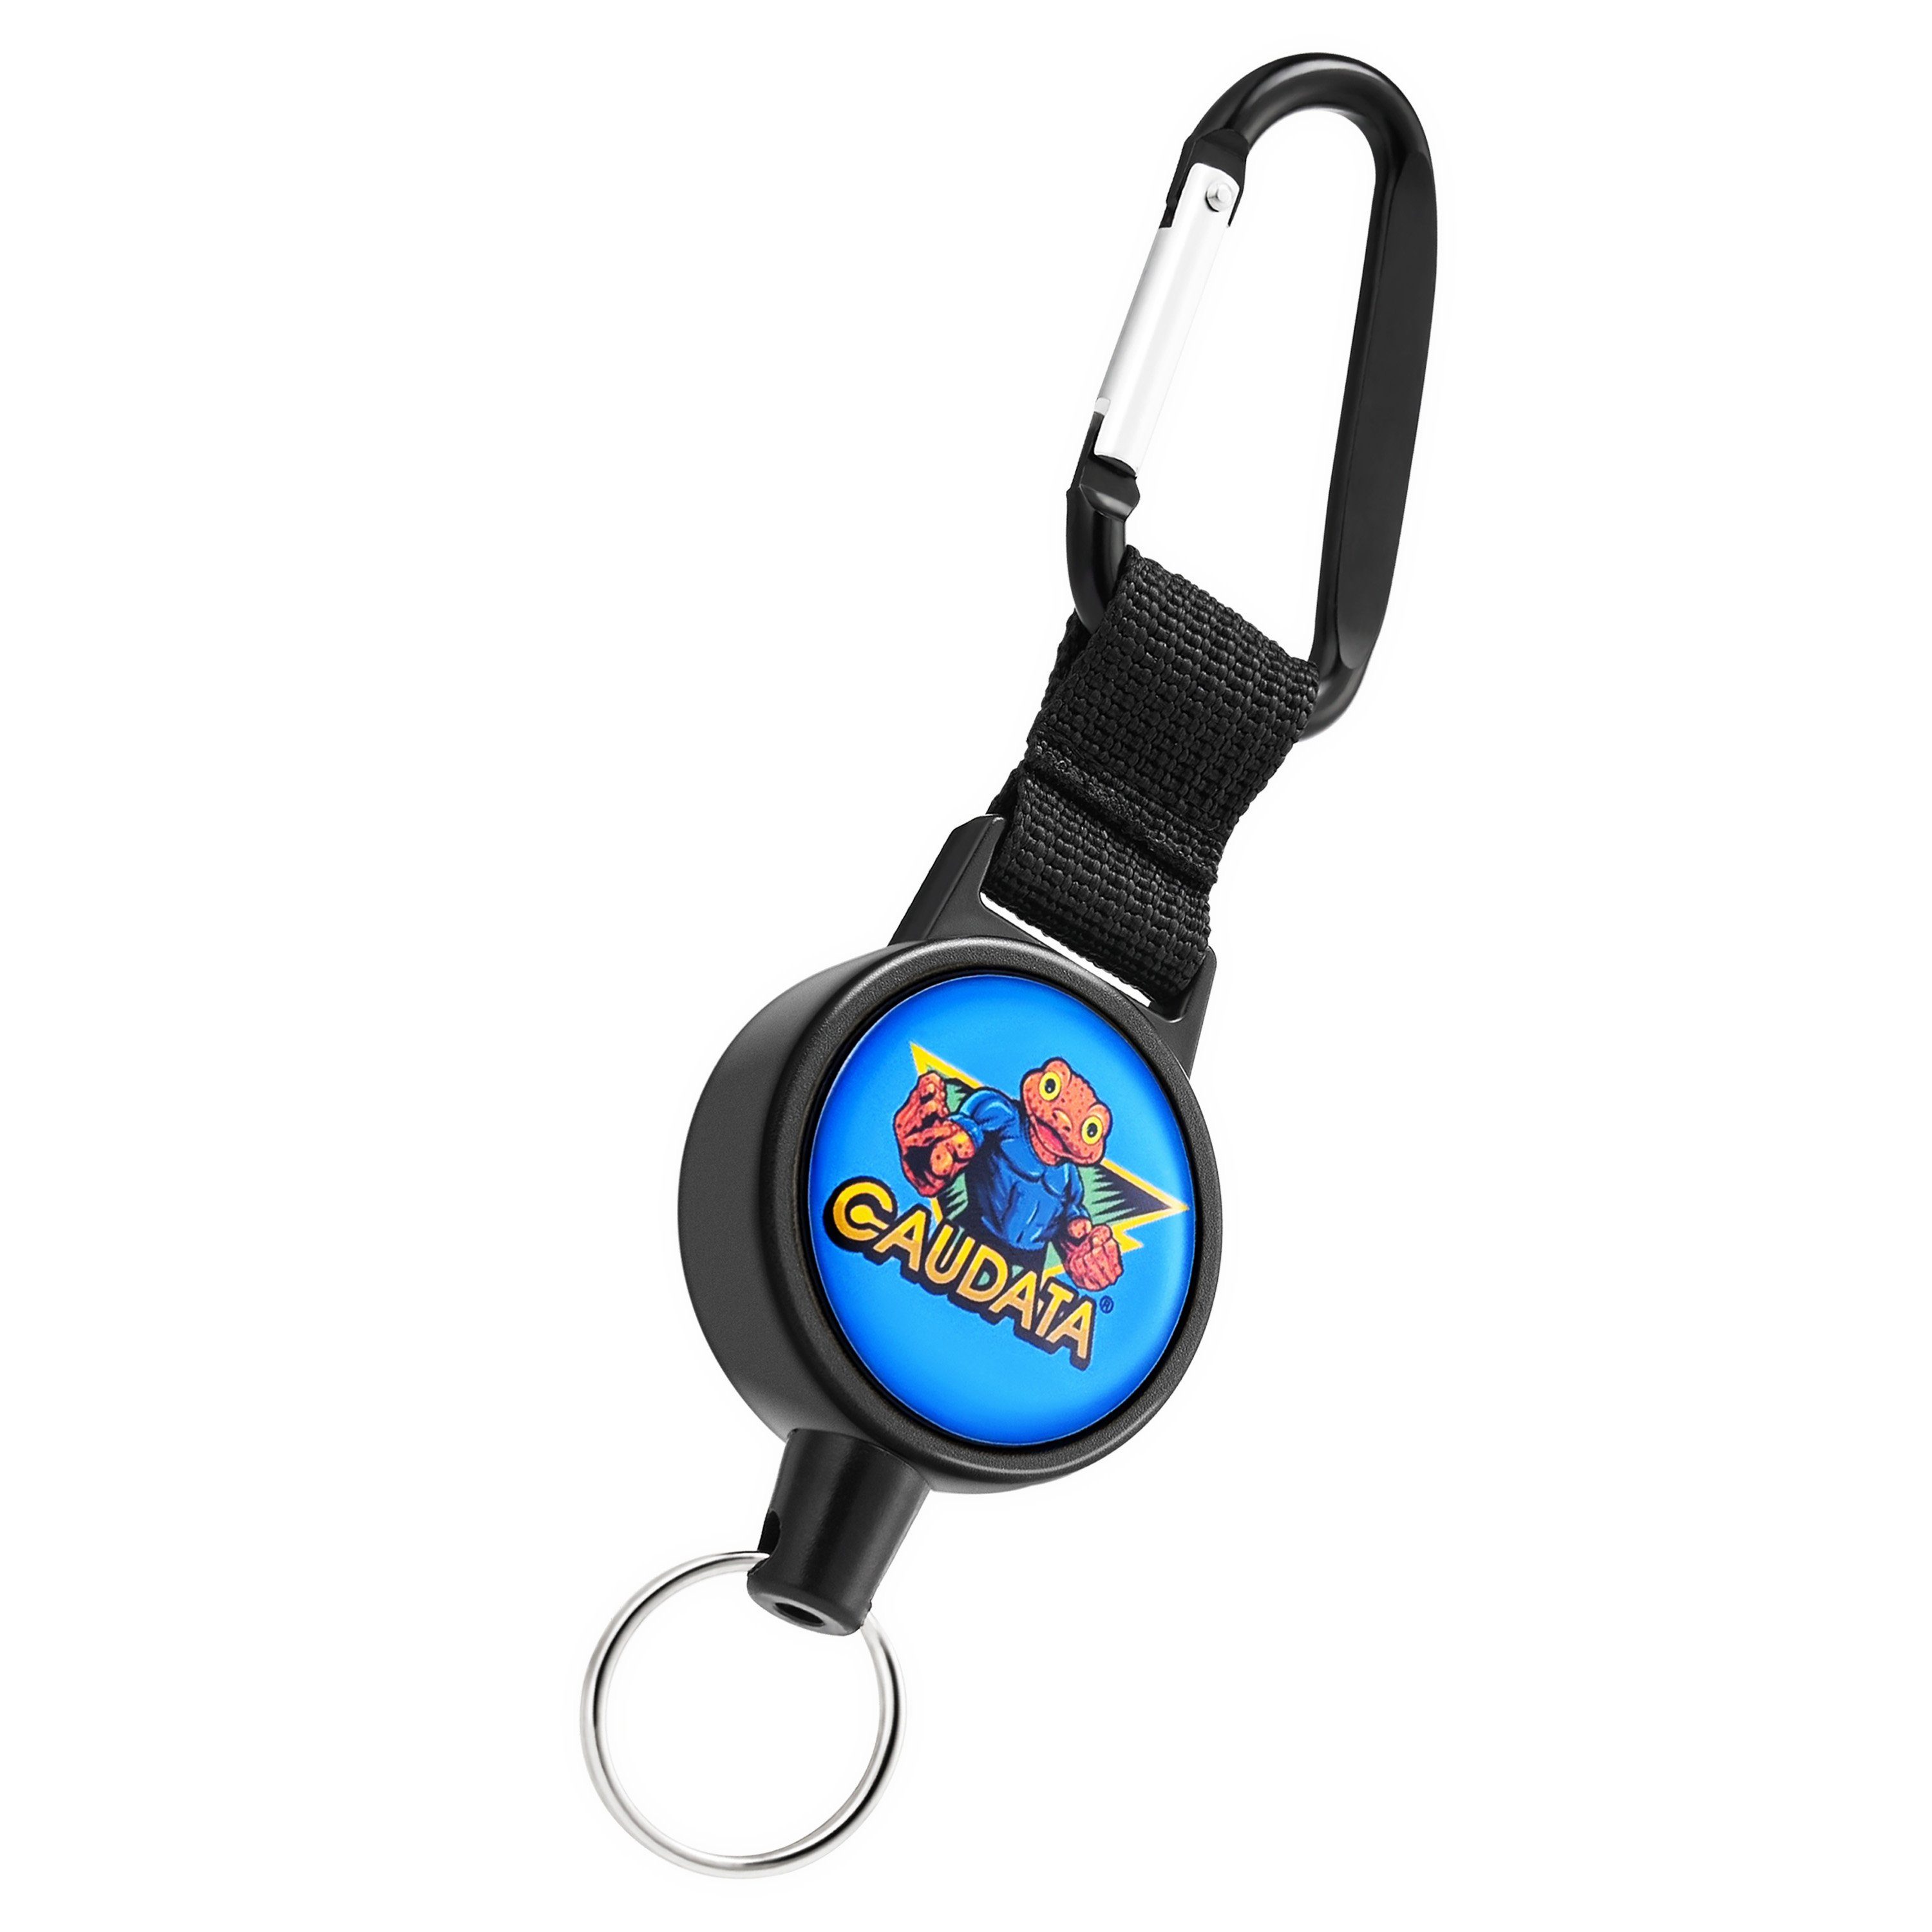 WEBBOMB Schlüsselanhänger mit Caudata Kartenhalter Schlüsselrolle 3 Ausweishalter Edition Stahlseil Jojo ausziehba blau